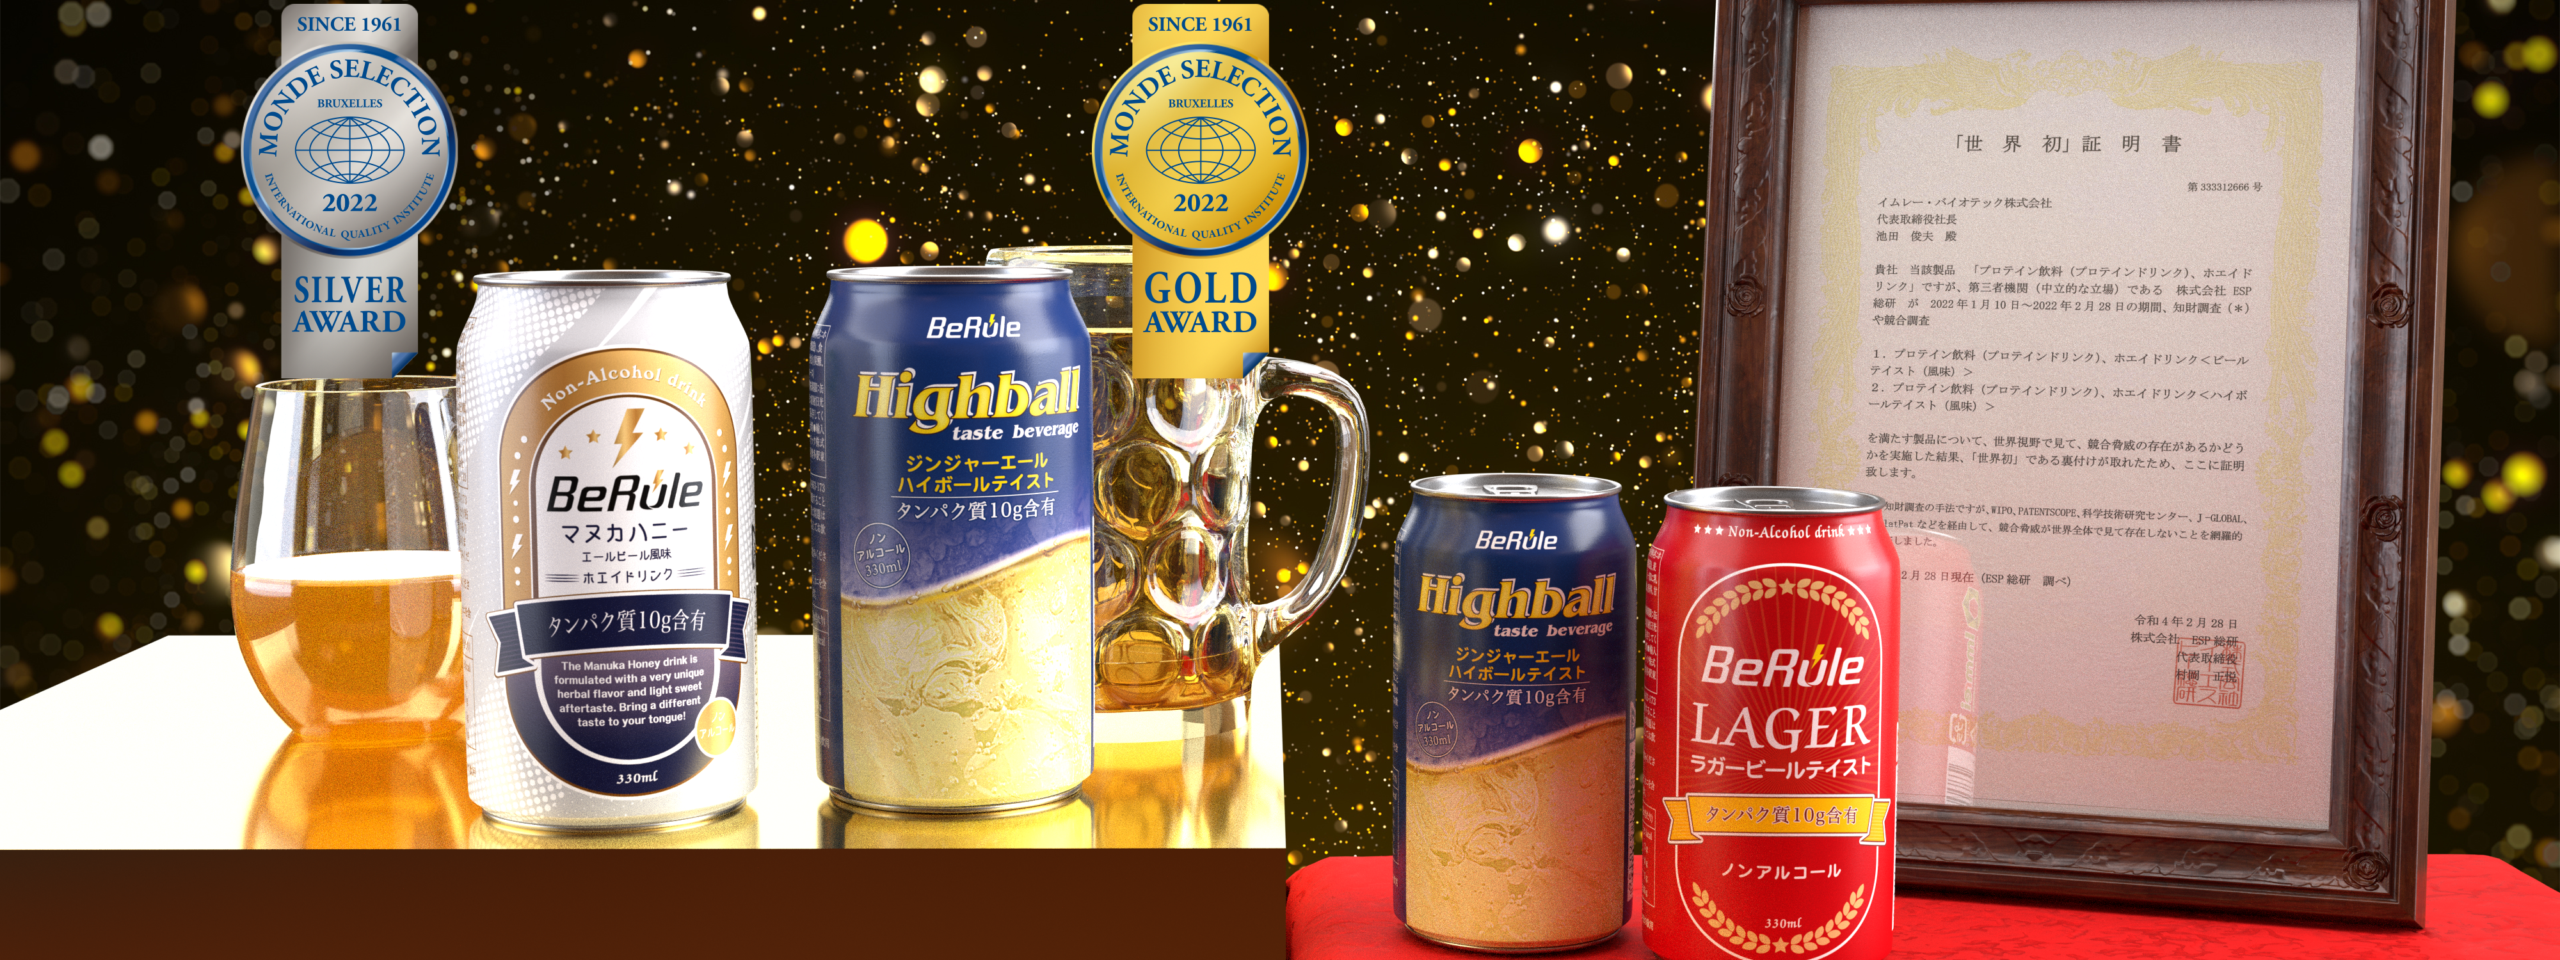 BeRuleのプロテイン入りノンアルコールビール・カクテルは世界初のビール・ハイボールテイストプロテイン飲料に認定され、モンドセレクション金賞・銀賞を受賞しました